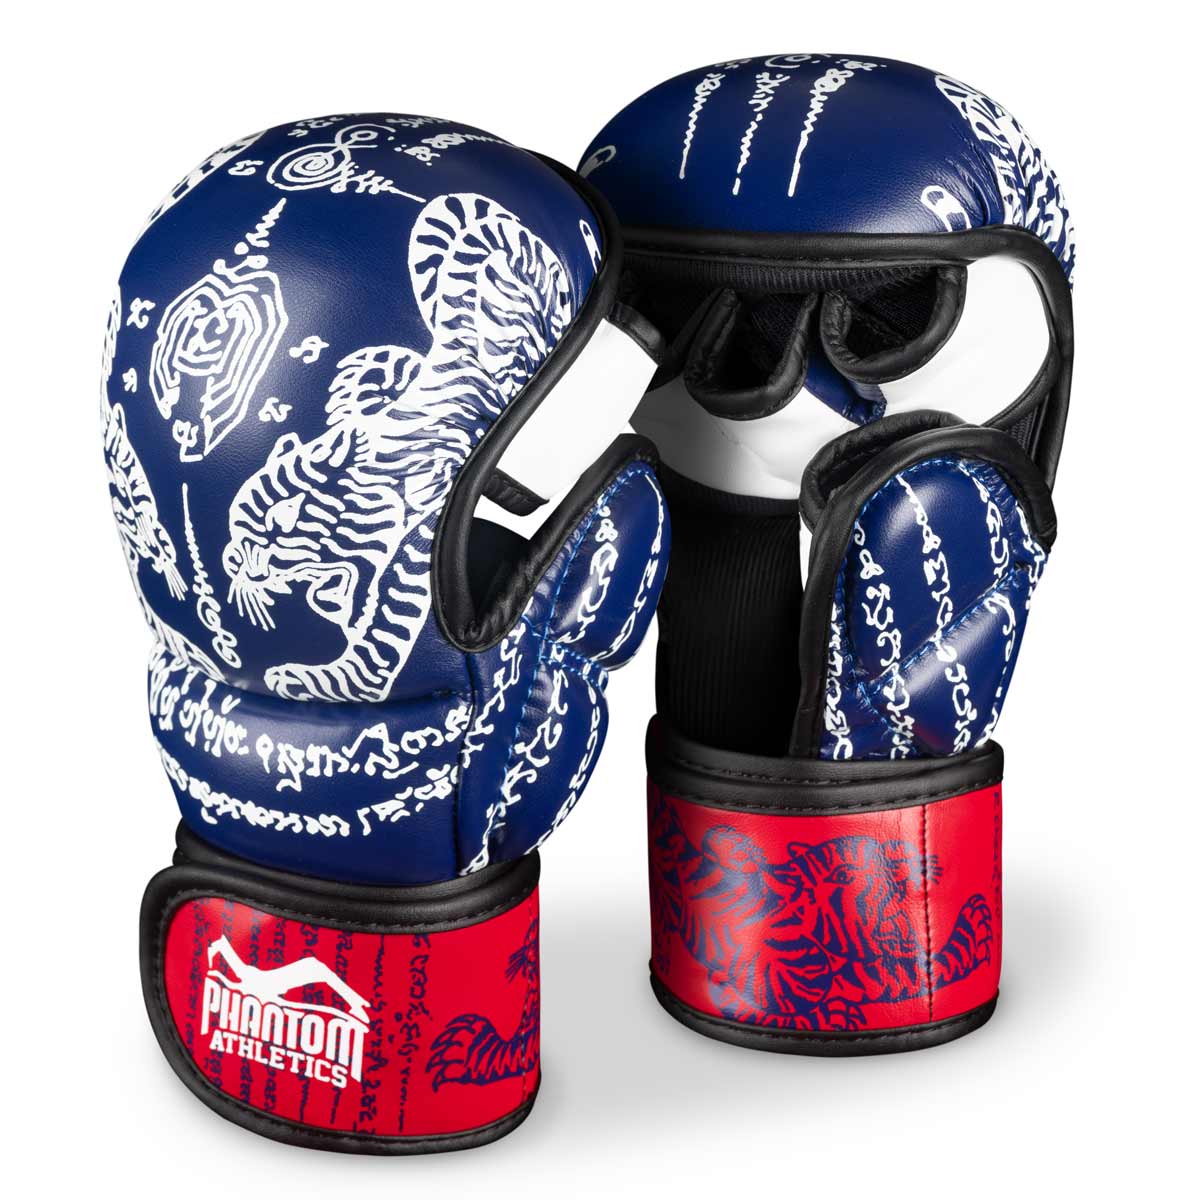 Phantom Муаи Тхаи рукавице за тајландски бокс и ММА спаринге, такмичења и тренинге. У традиционалном Сак Иант дизајну и плавој/црвеној боји.